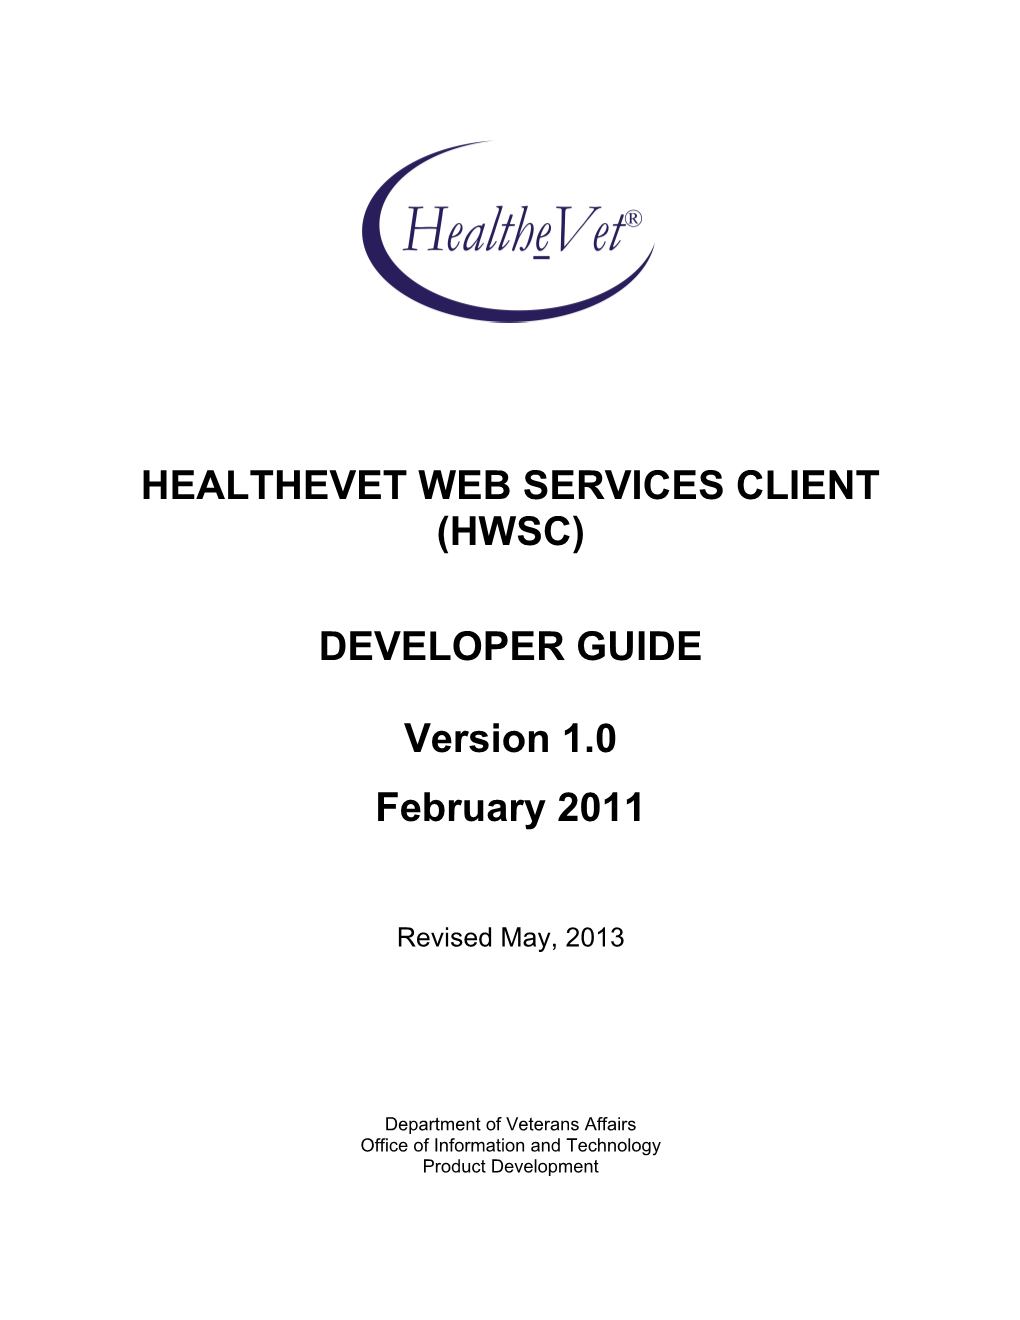 HWSC 1.0 Developer Guide